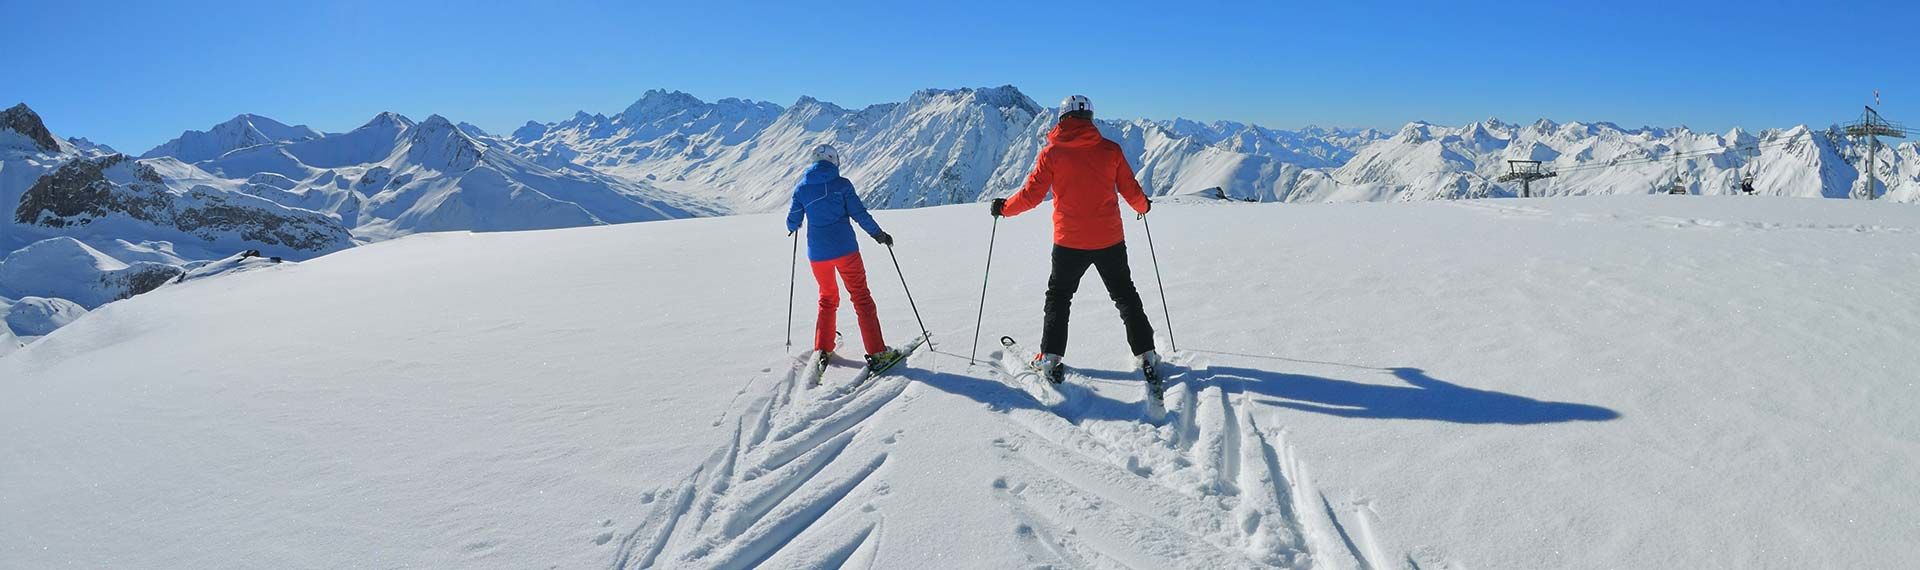 Pistenträume in Ischgl - das Lifestyle-Skigebiet der Alpen